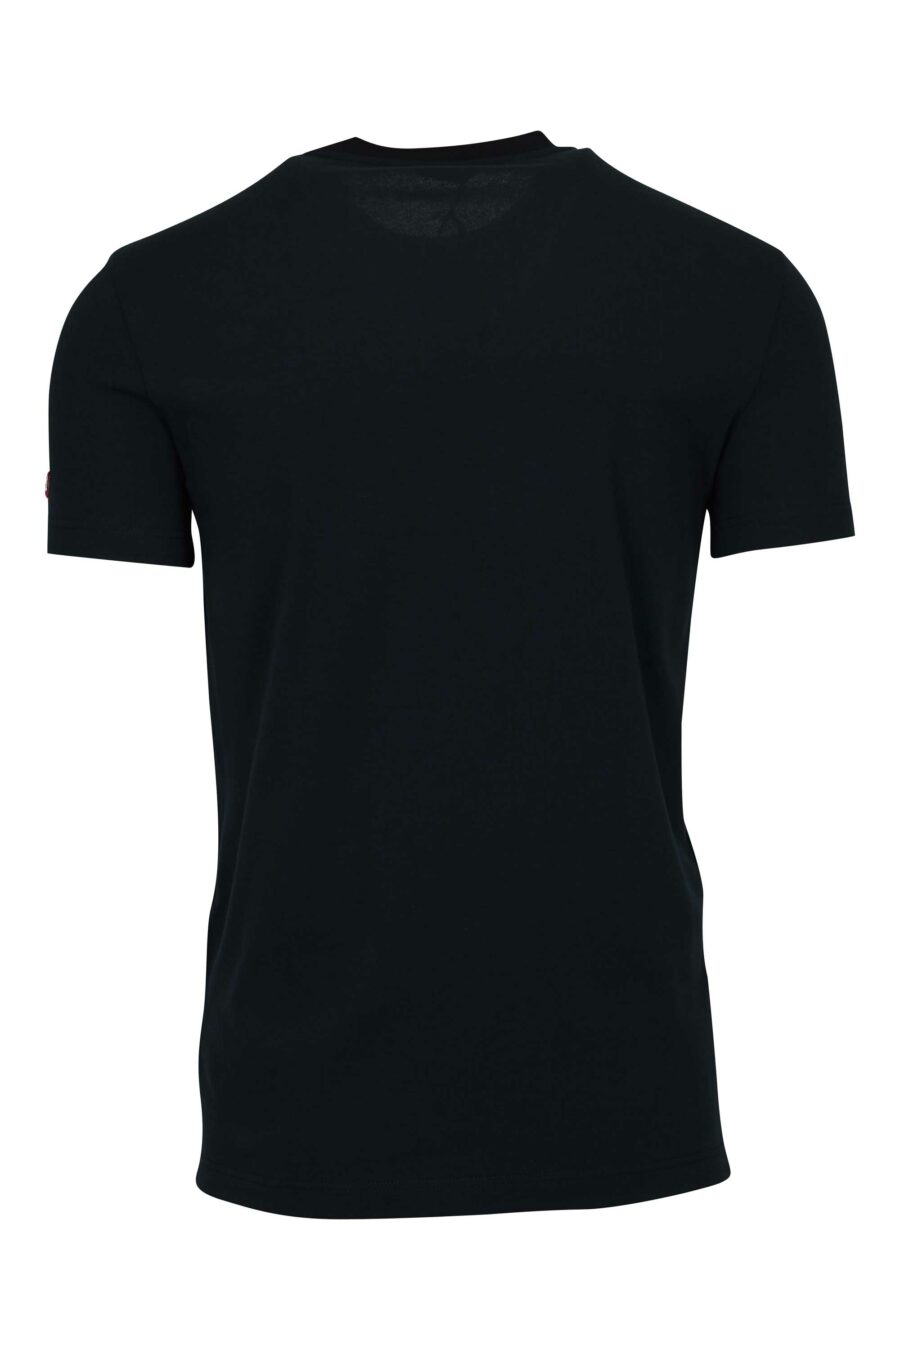 Camiseta negra con logo etiqueta - 8032674811202 1